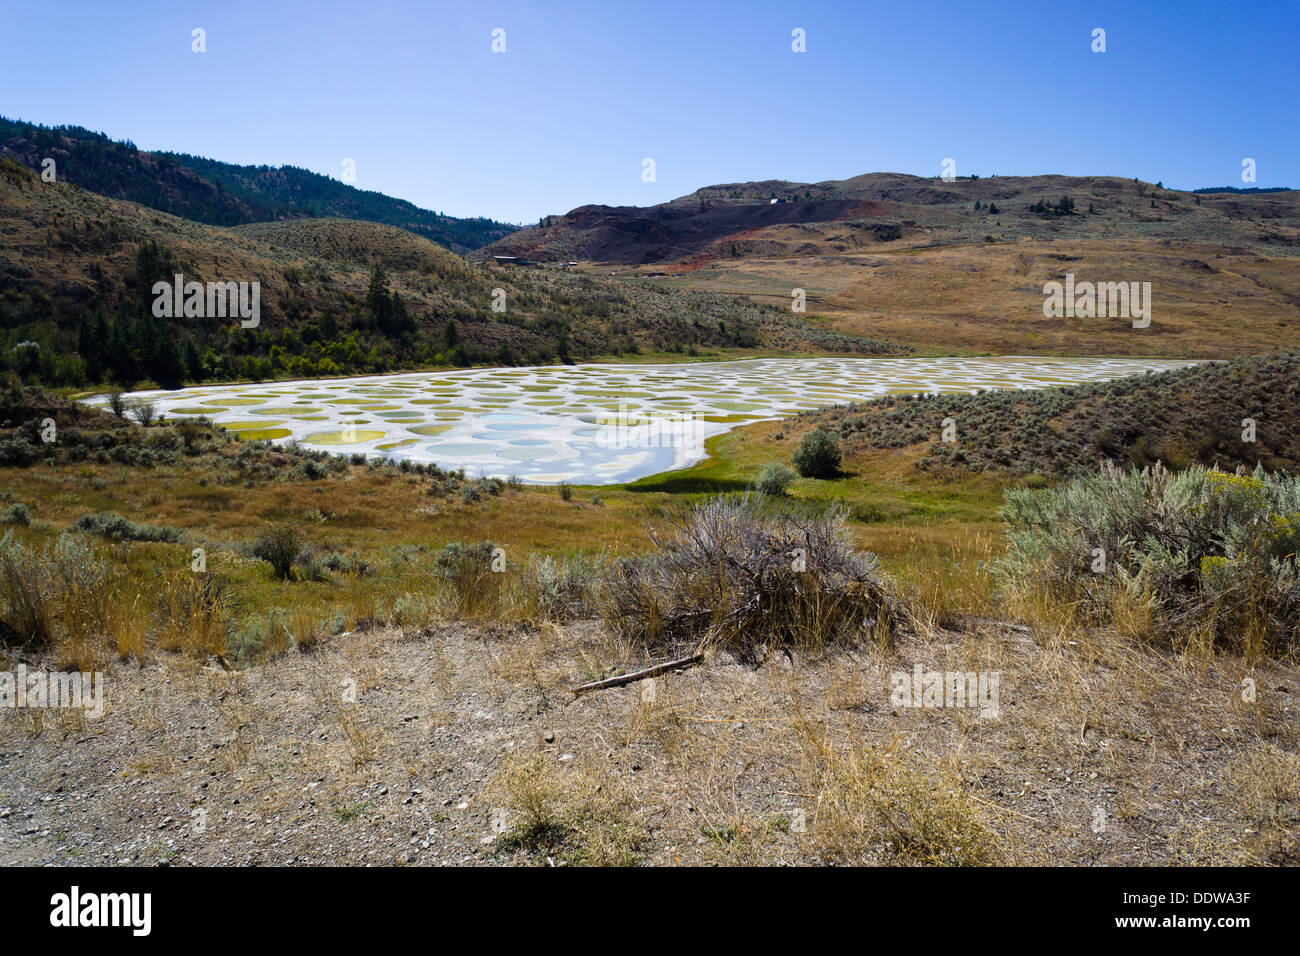 Macchiato il lago, una soluzione salina alcalina endorheic lago situato a nord-ovest di Osoyoos, regione Okanagan-Similkameen, BC, Canada. Foto Stock